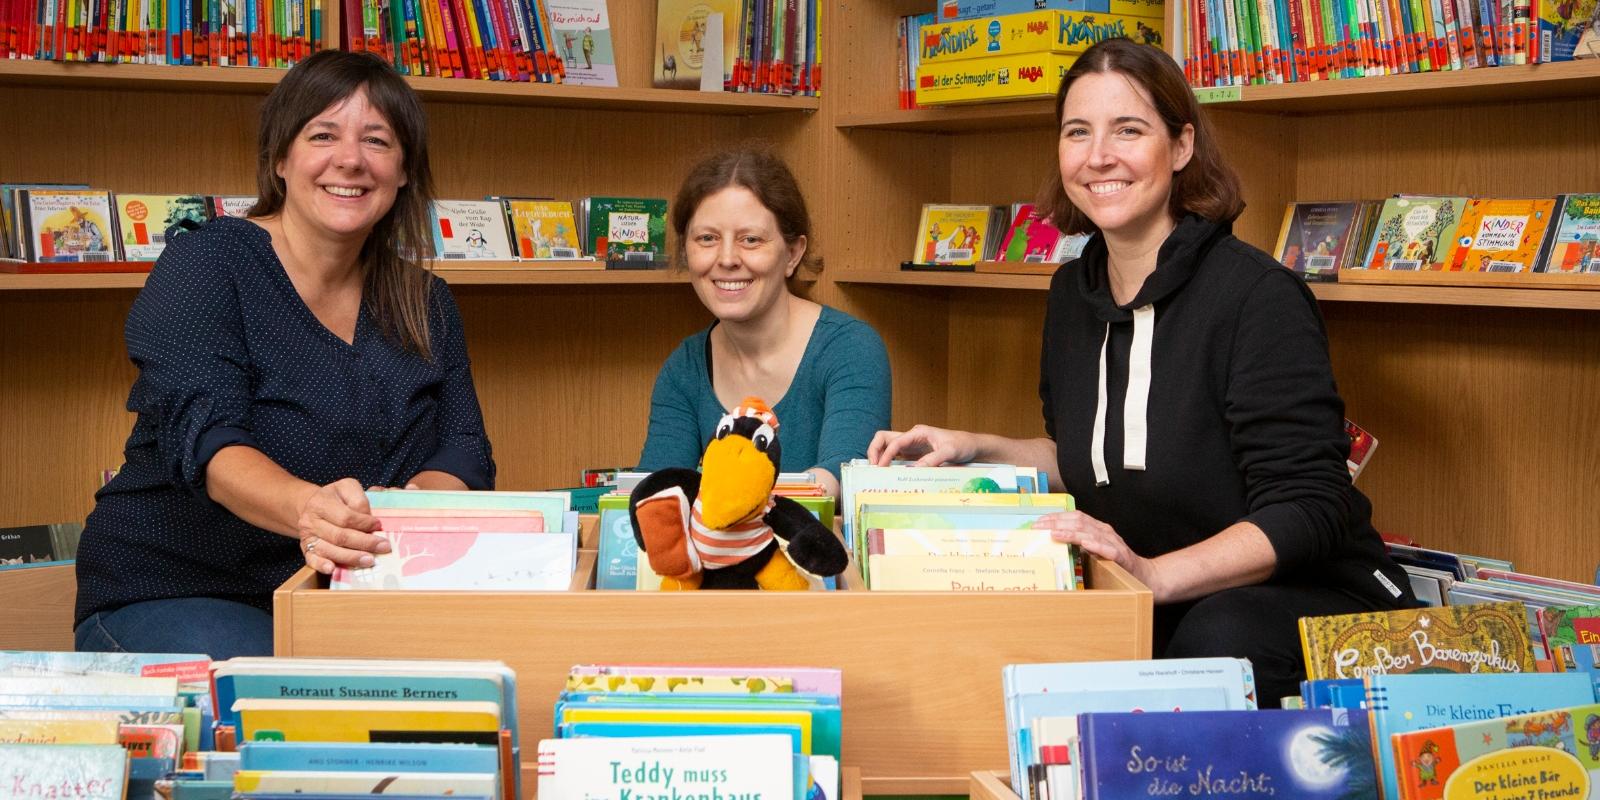 Liane Schäfer, Annette Gräf und Anja Bongartz (v.l.n.r.) werden die Kinderbibliothek zusammen leiten.